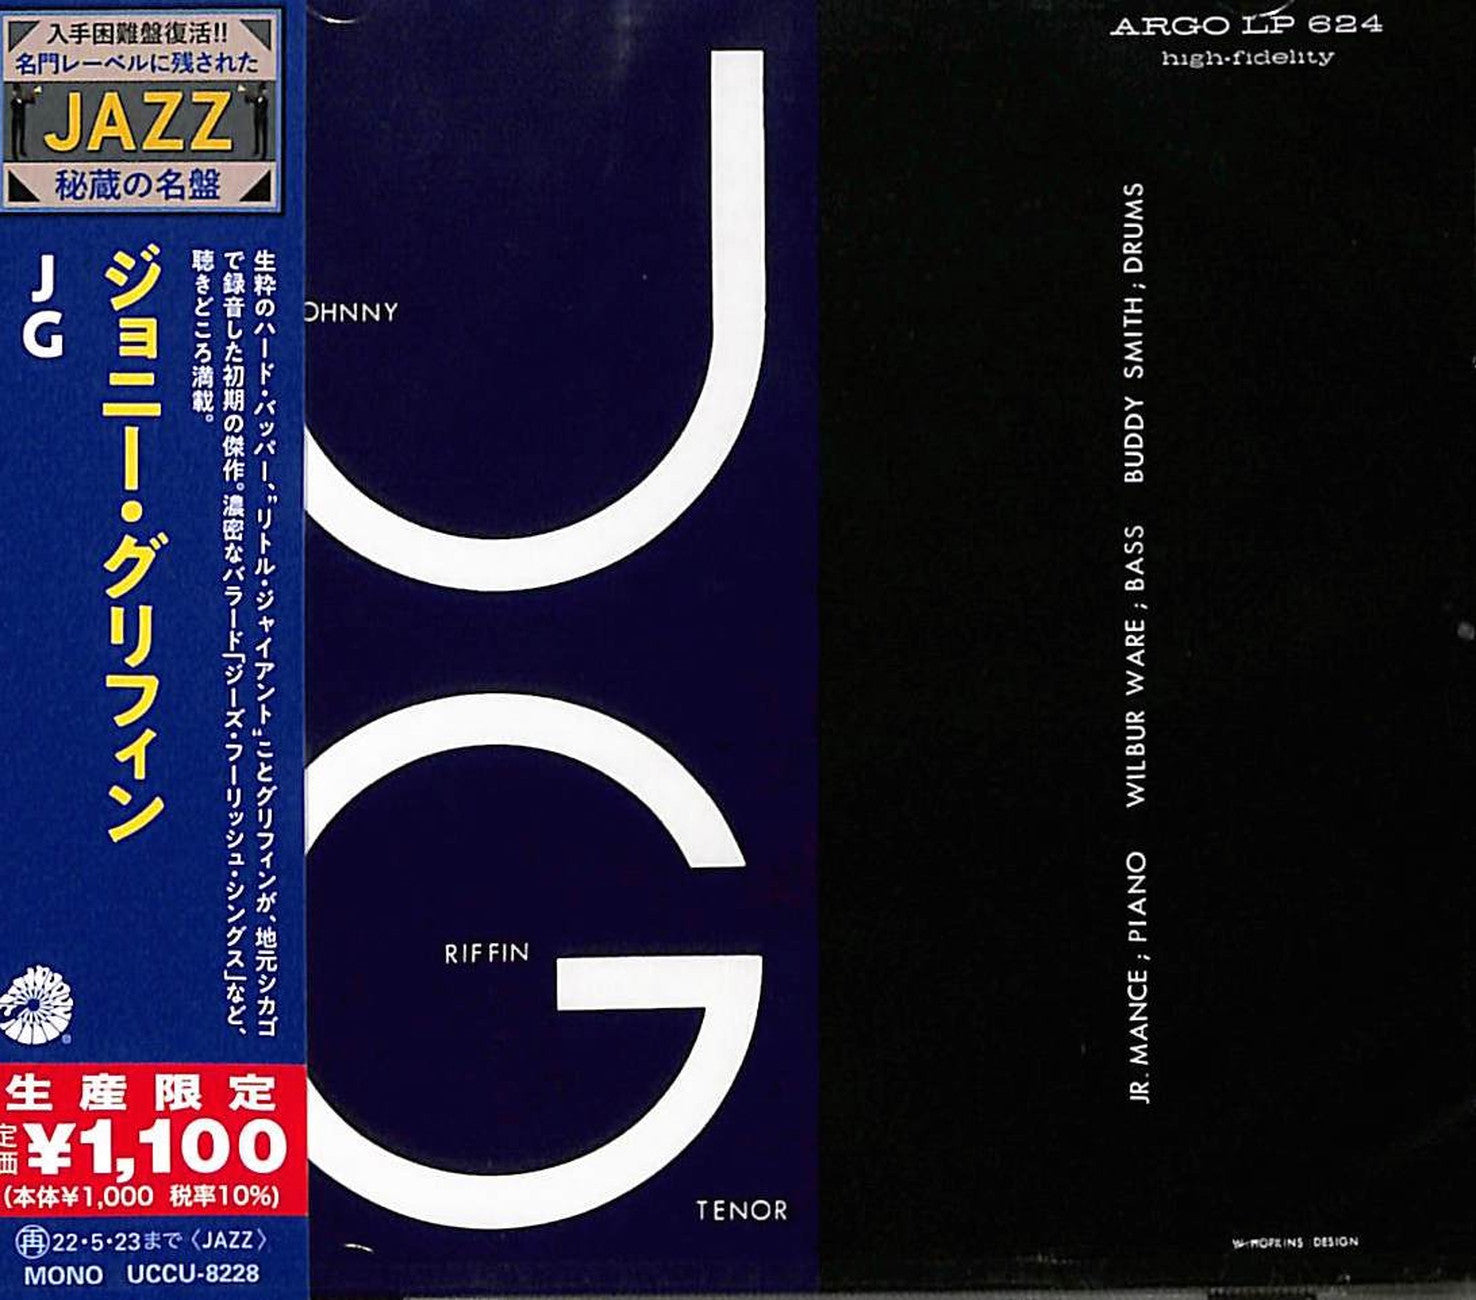 Johnny Griffin - Jg - Japan CD Limited Edition – CDs Vinyl Japan 